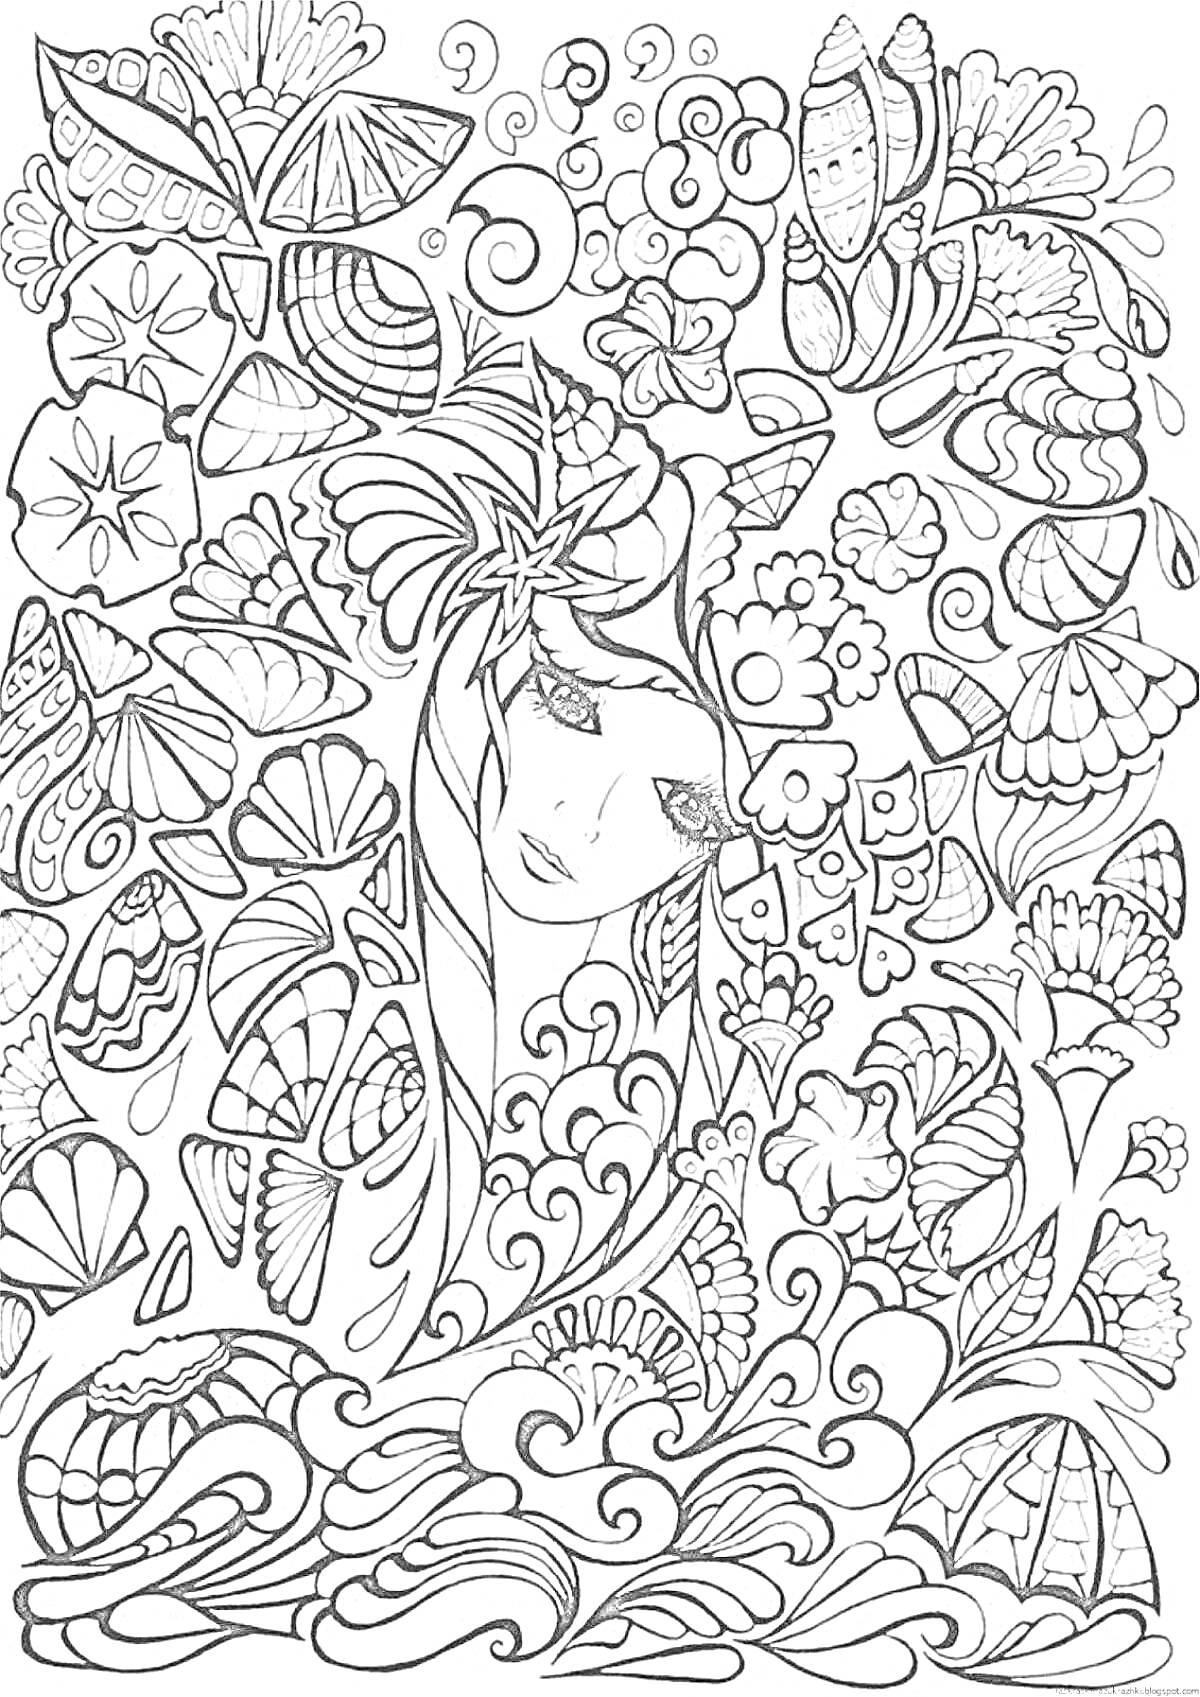 Раскраска Девушка в окружении морских раковин, бабочек и цветов